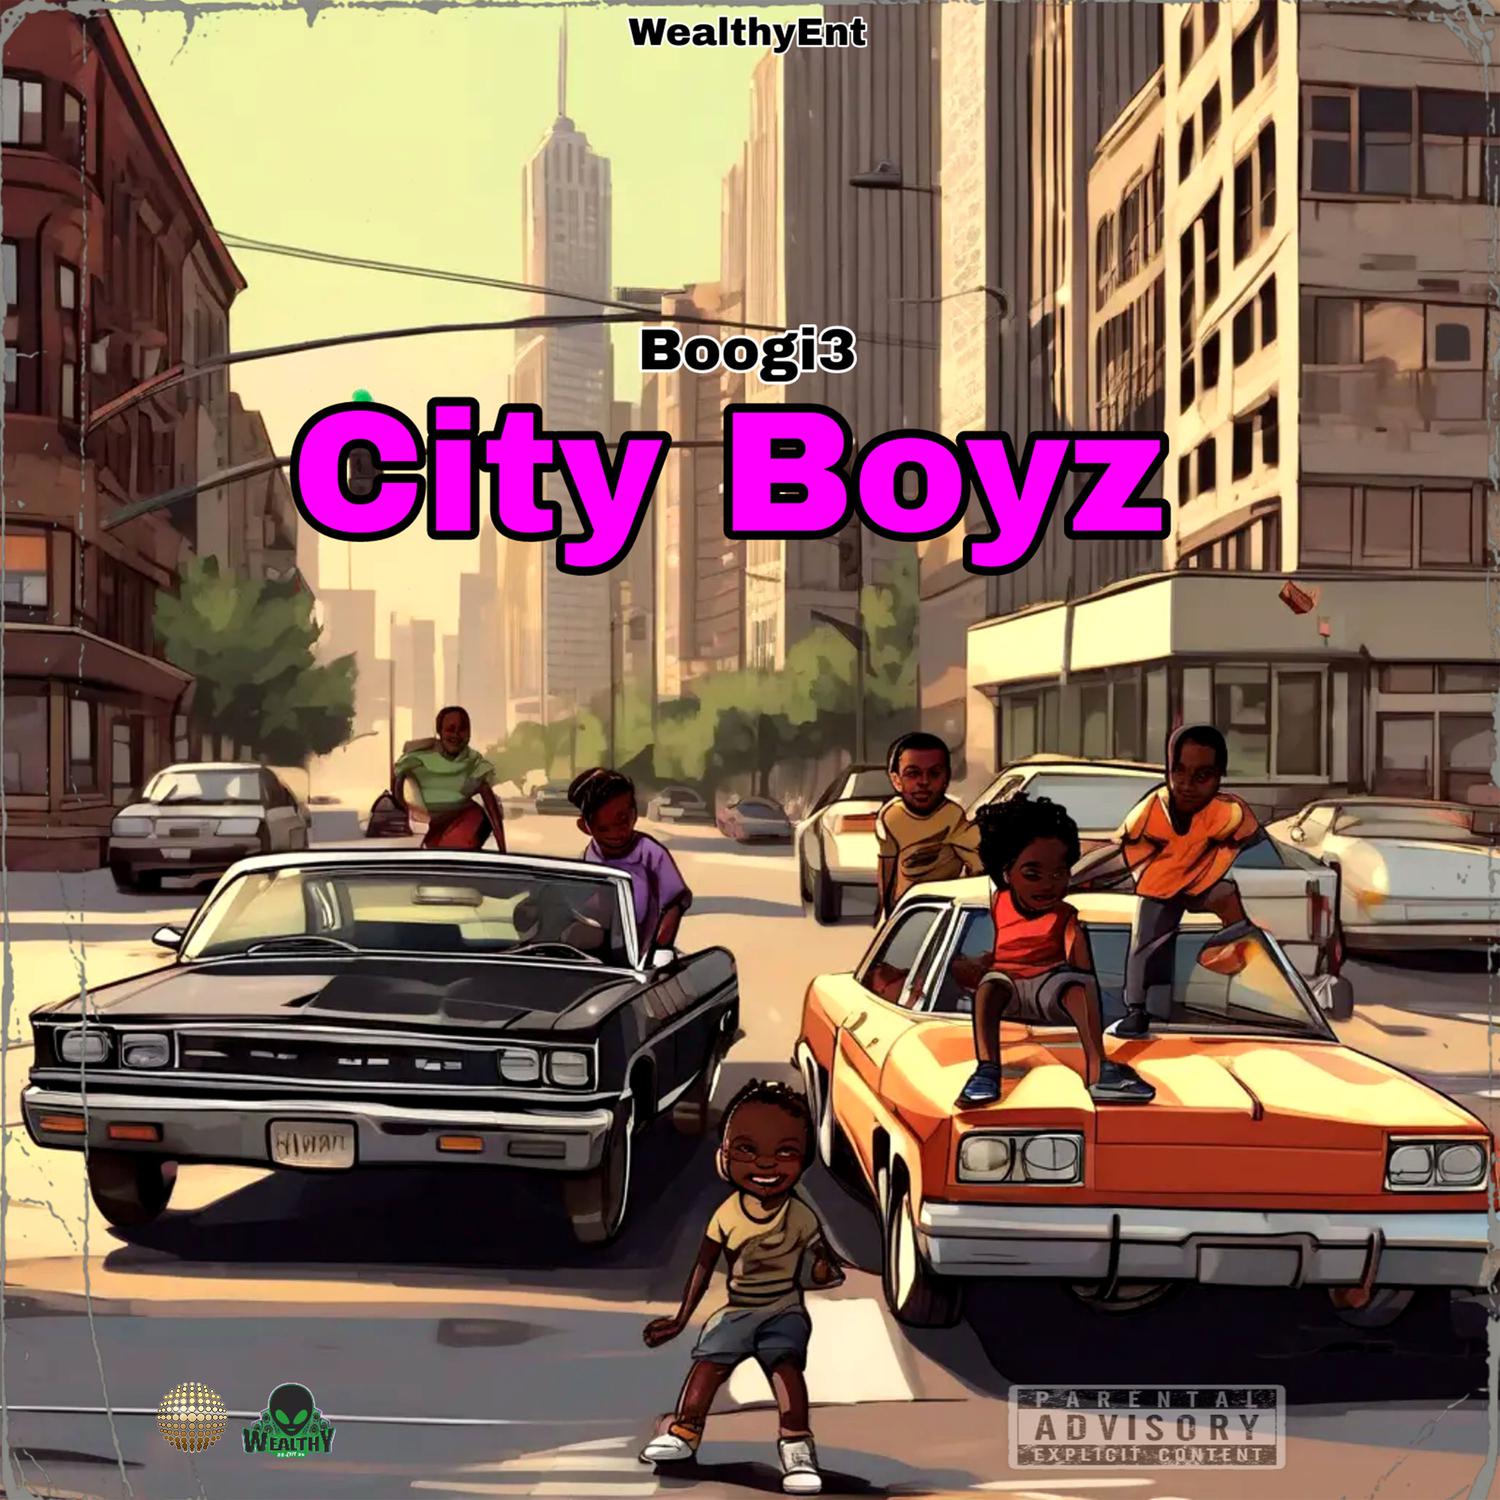 Boogi3 - City Boyz